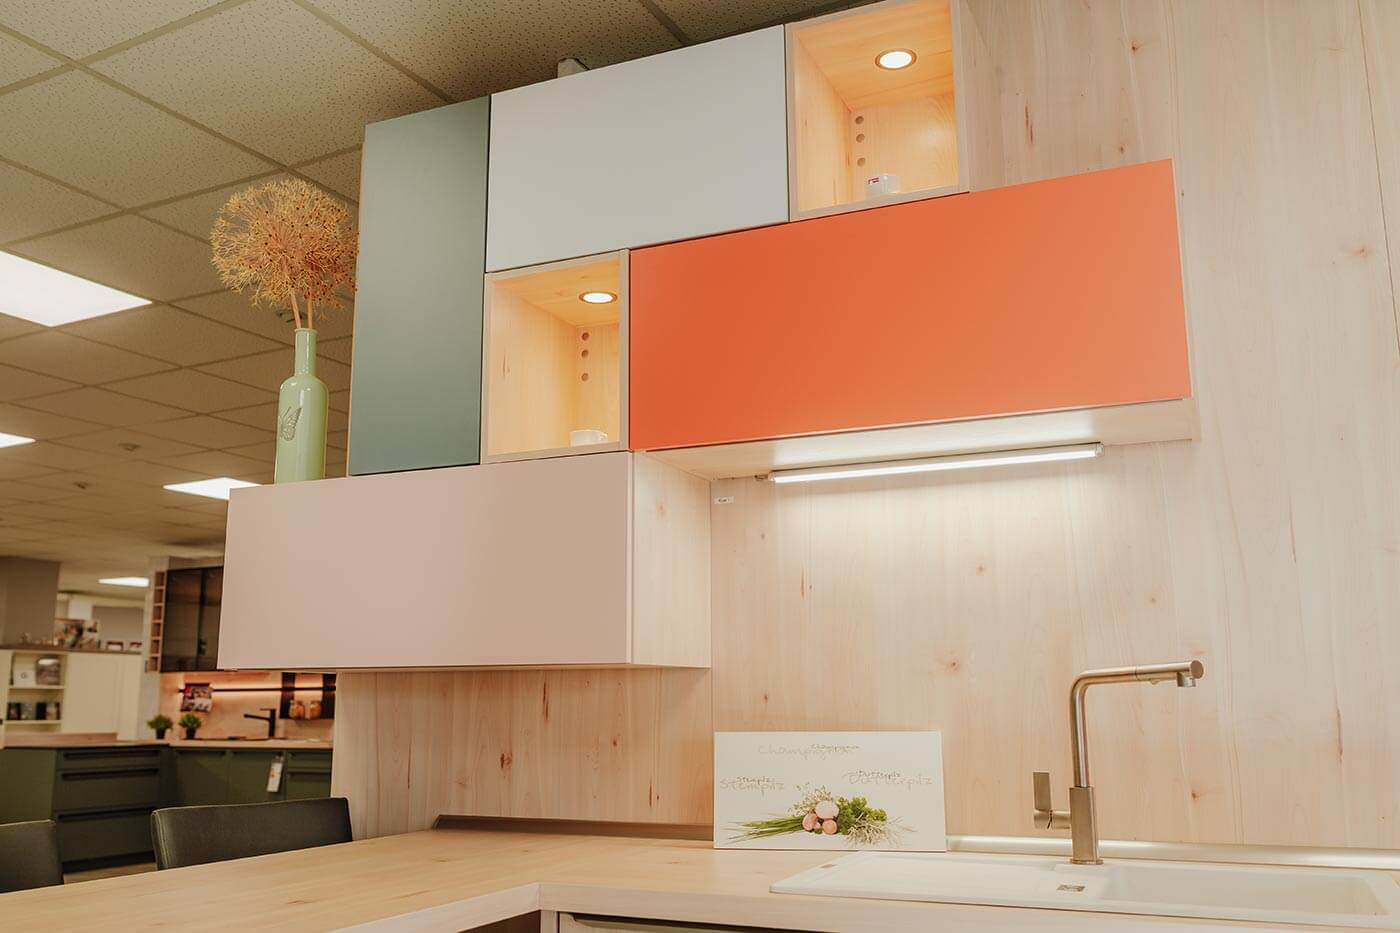 Küche aus Holz mit Fronten in orange & mintgrün in der Küchenausstellung Matthäs